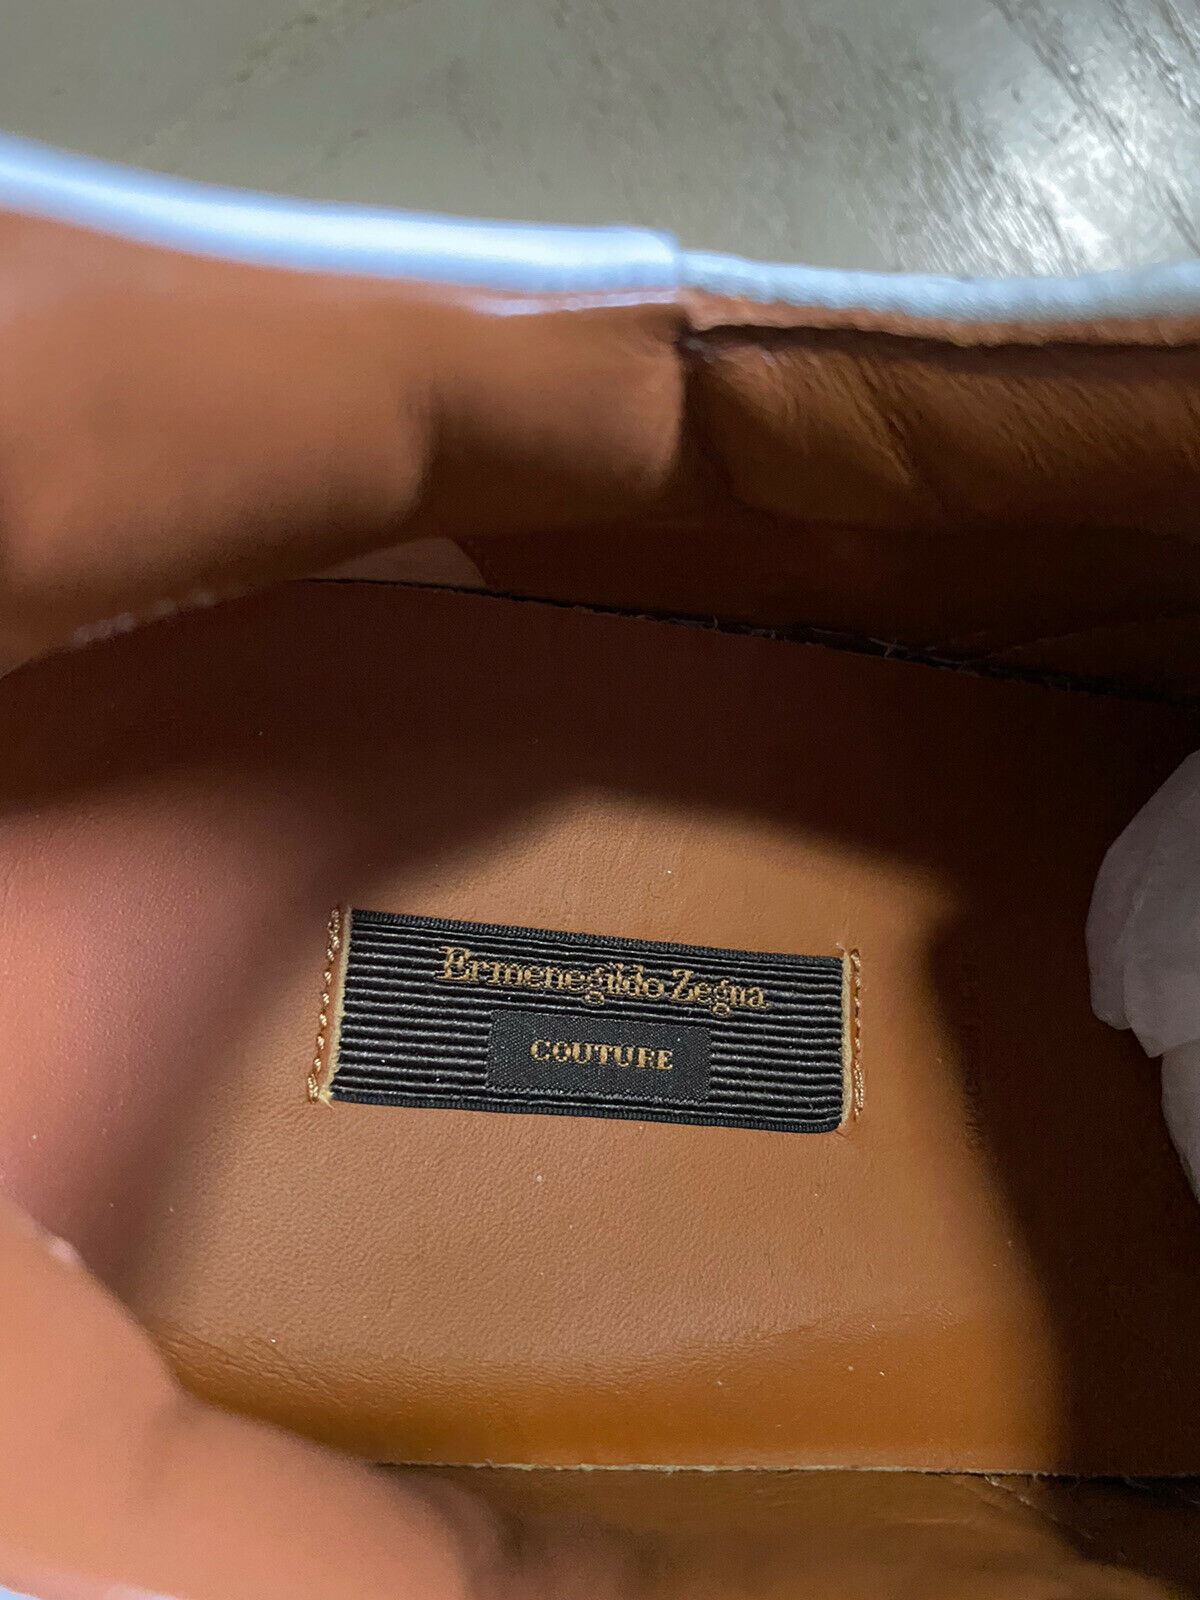 Новые кожаные кроссовки Ermenegildo Zegna Couture за $995, белые 11, США, Италия